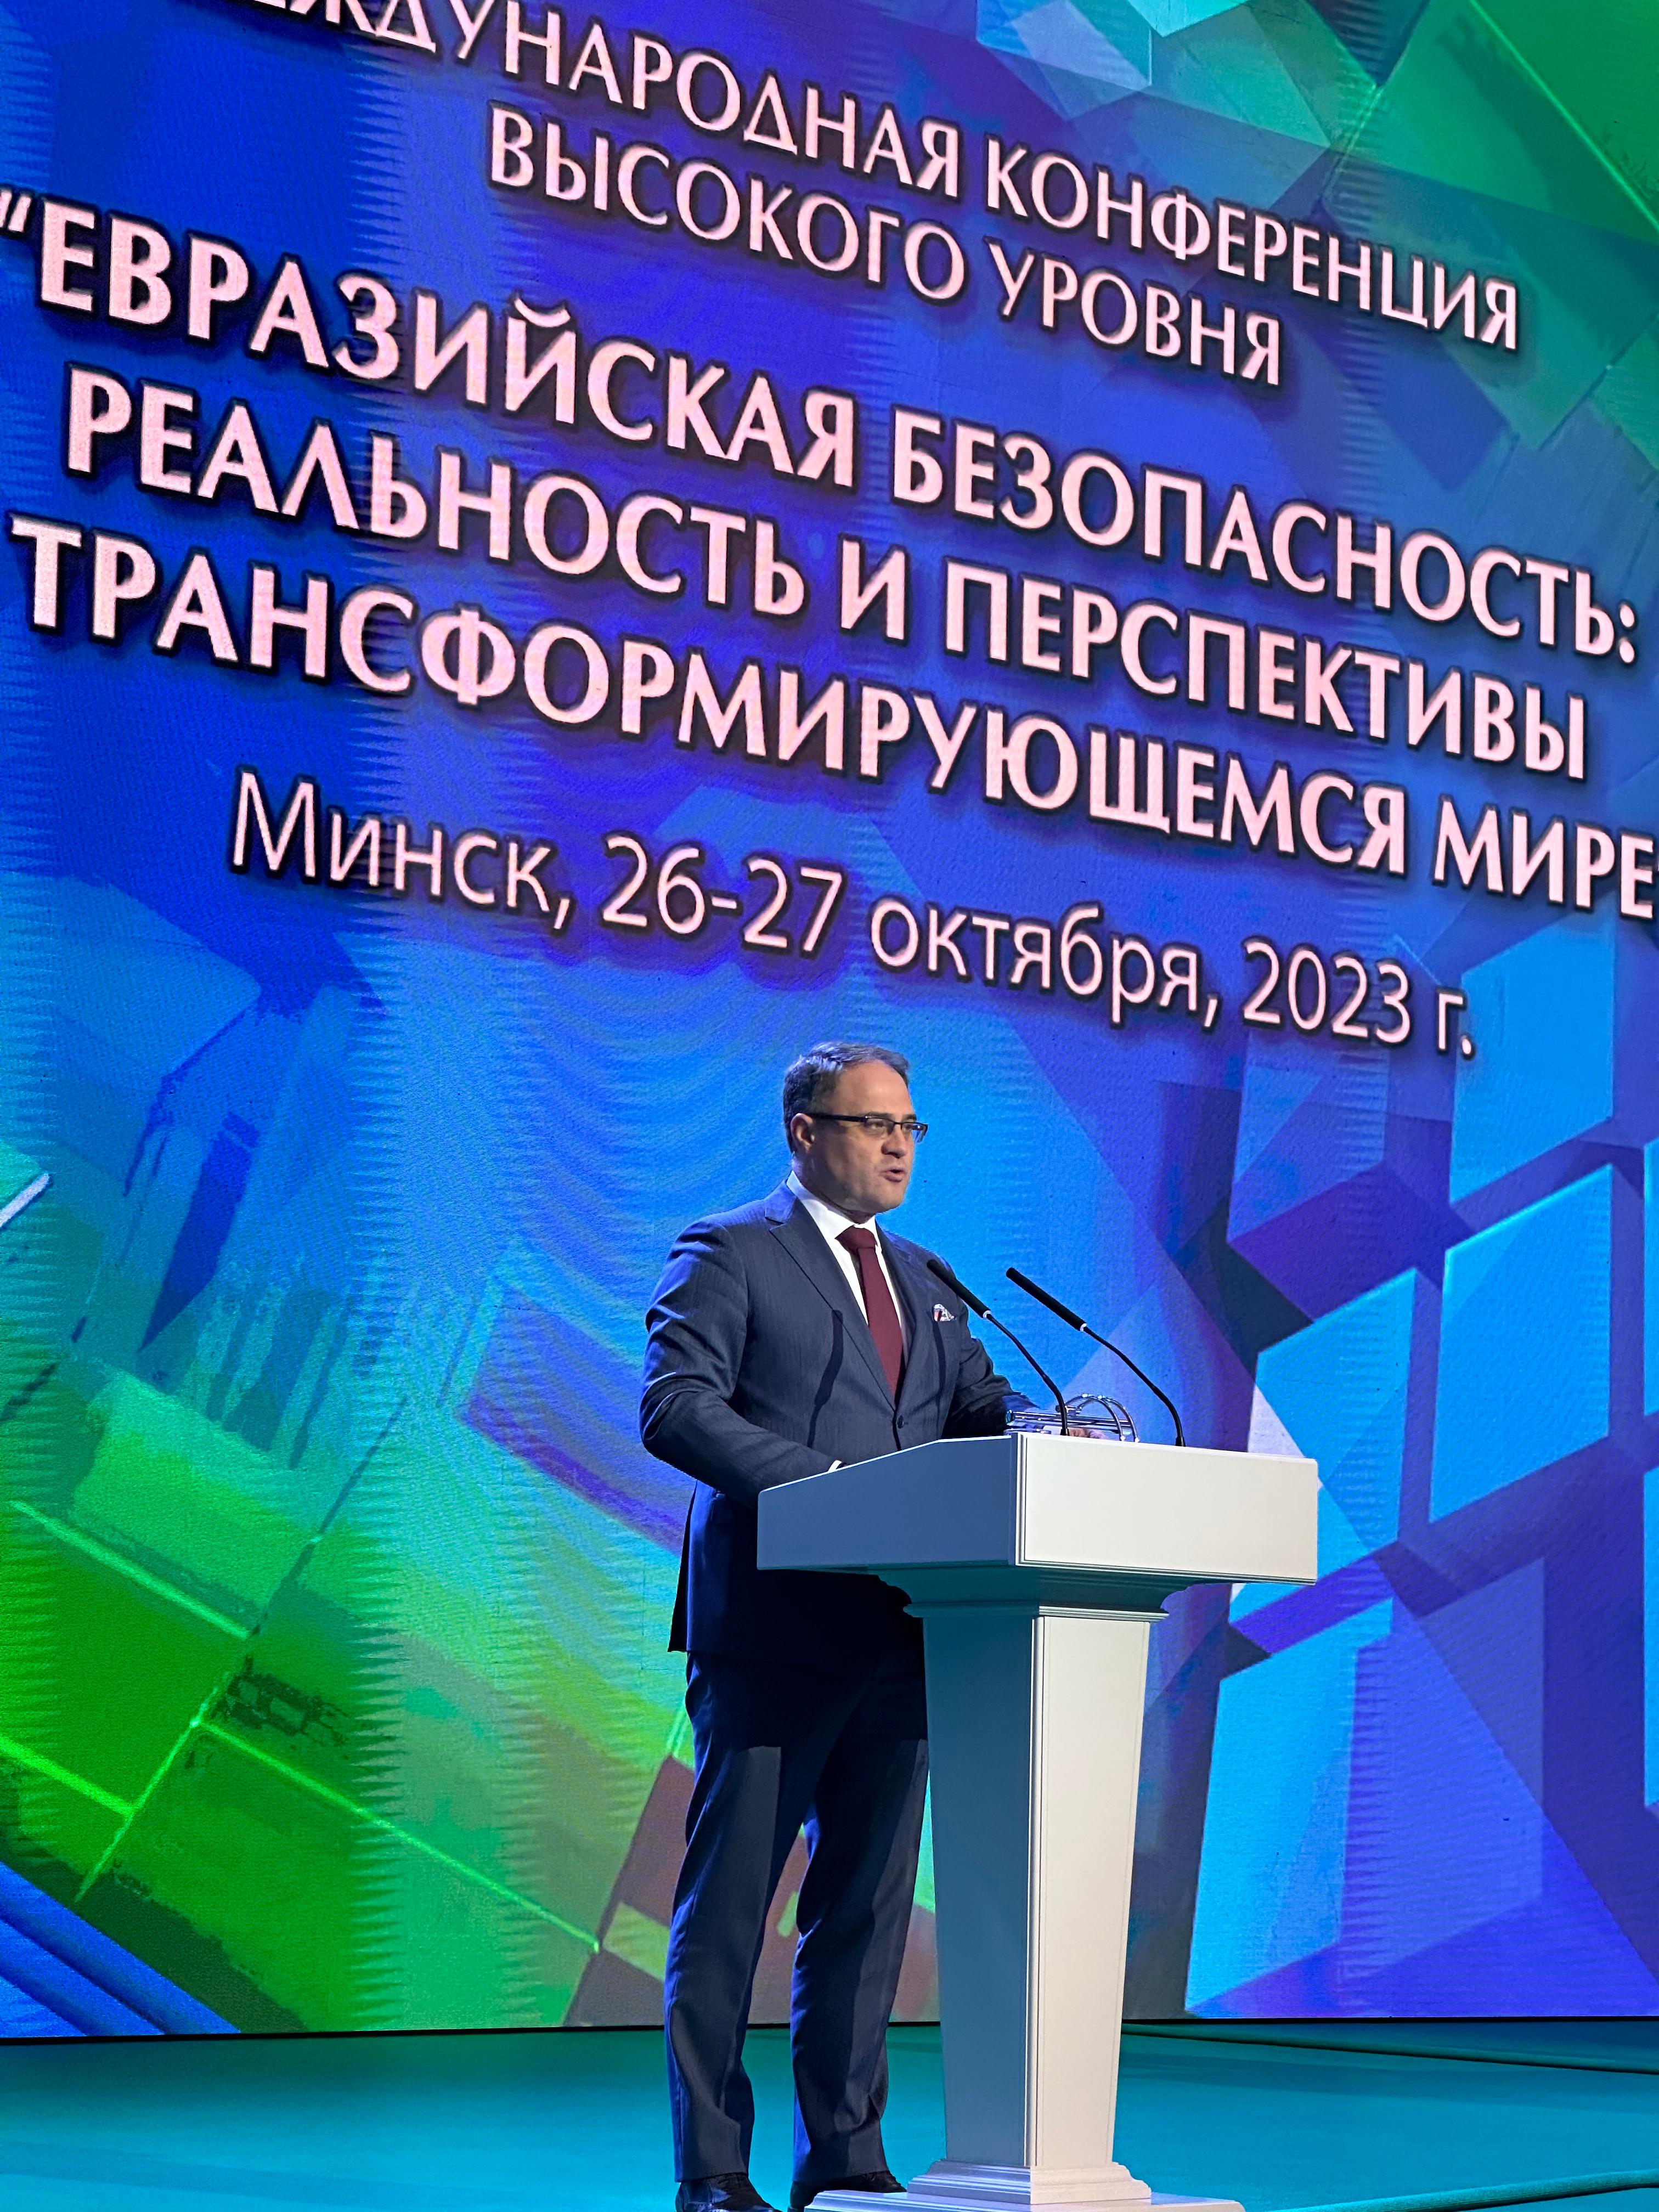 Приоритеты Казахстана представлены на конференции по евразийской безопасности в Минске